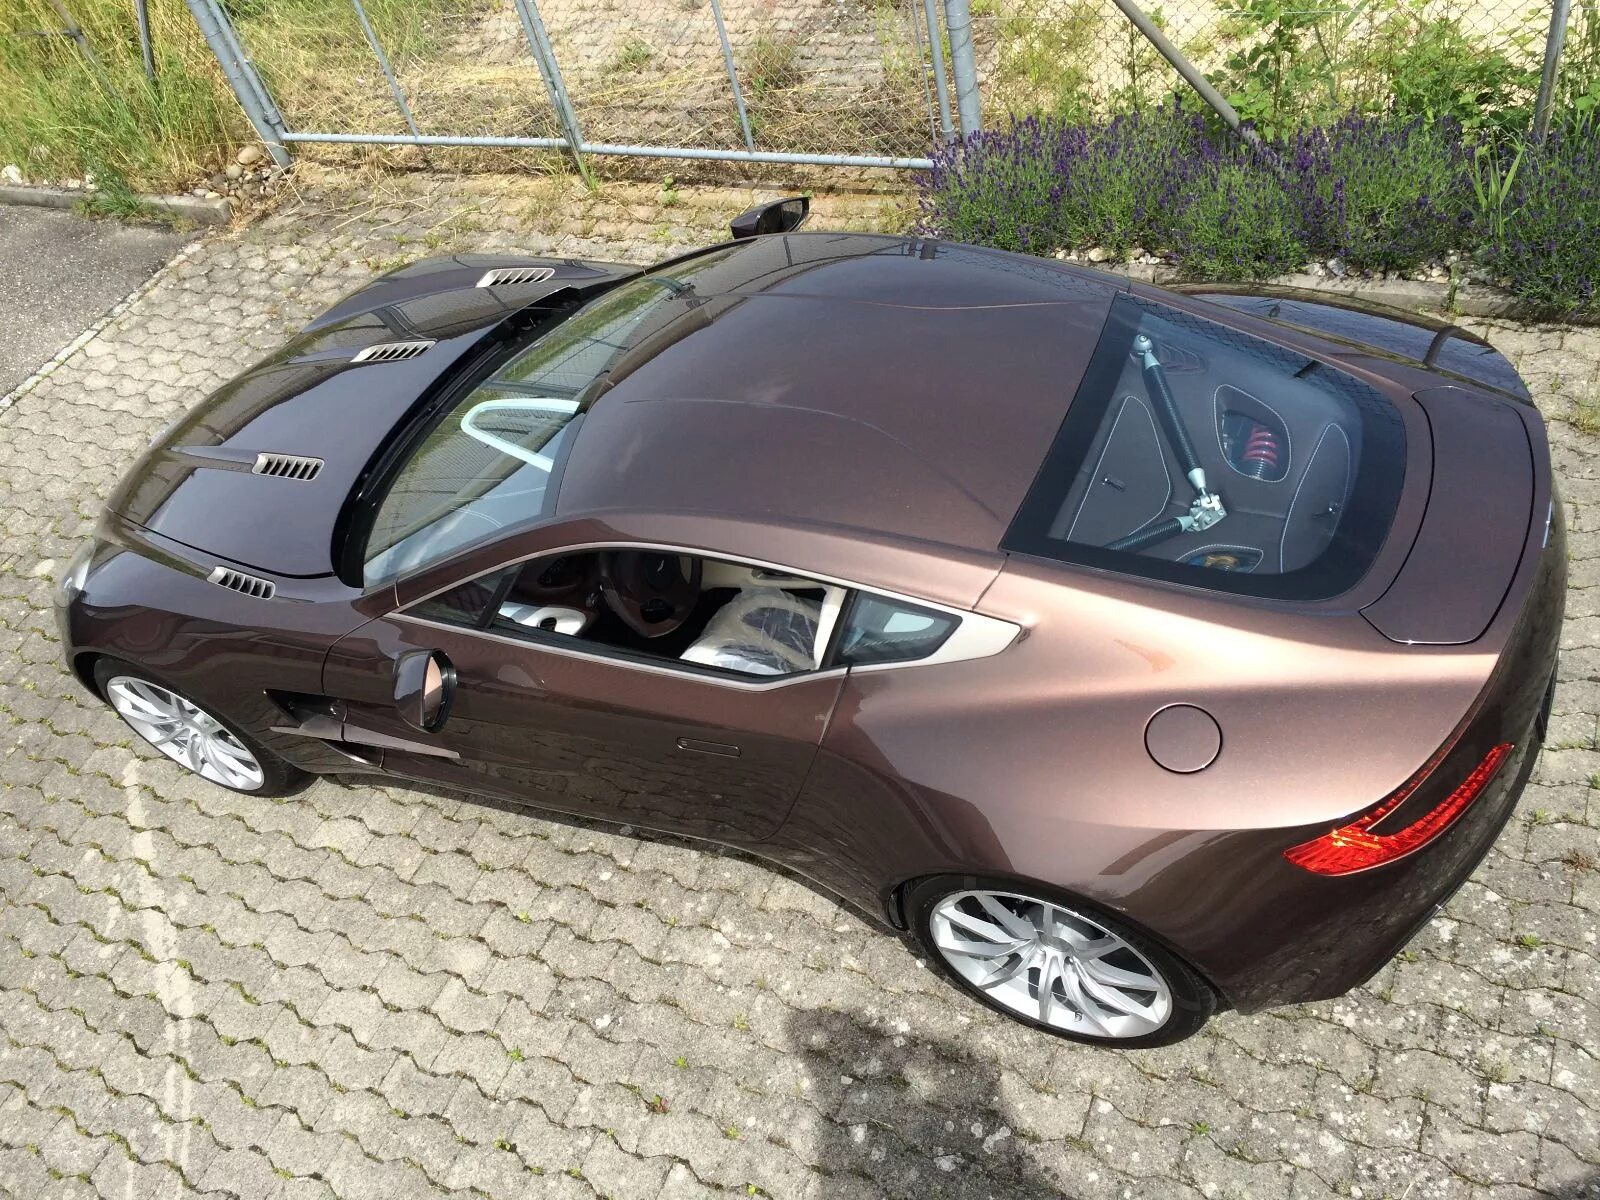 Купить автомобиль за миллион рублей. Aston Martin one-77. Красивые машины недорогие. Интересные авто. Недорогая качественная машина.